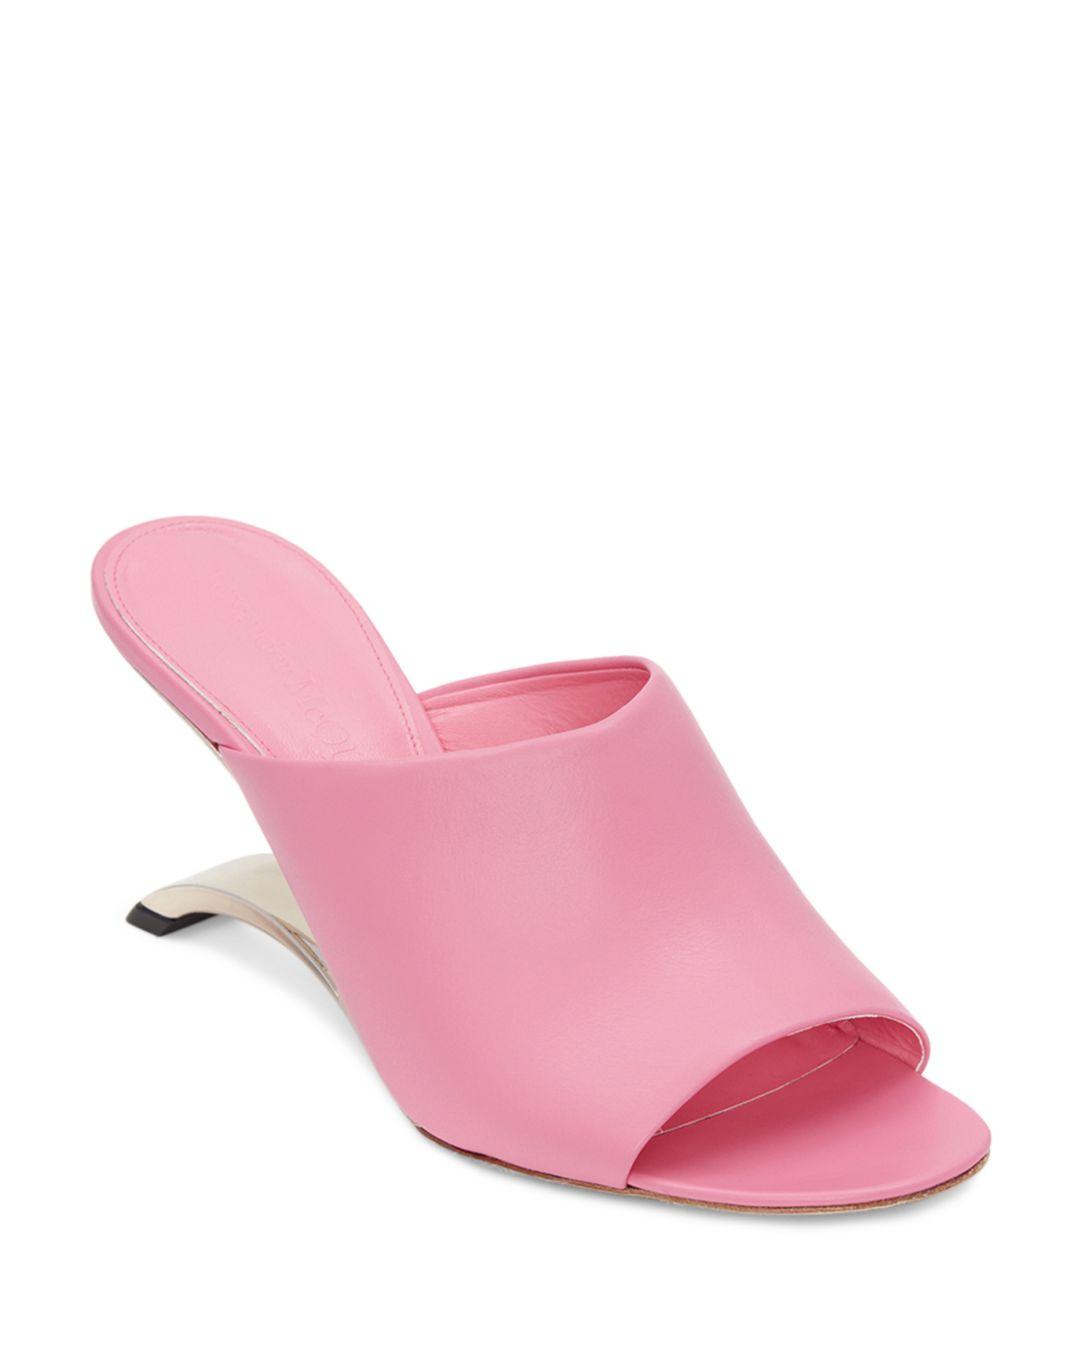 Alexander McQueen Arc High Heel Slide Sandals in Pink | Lyst